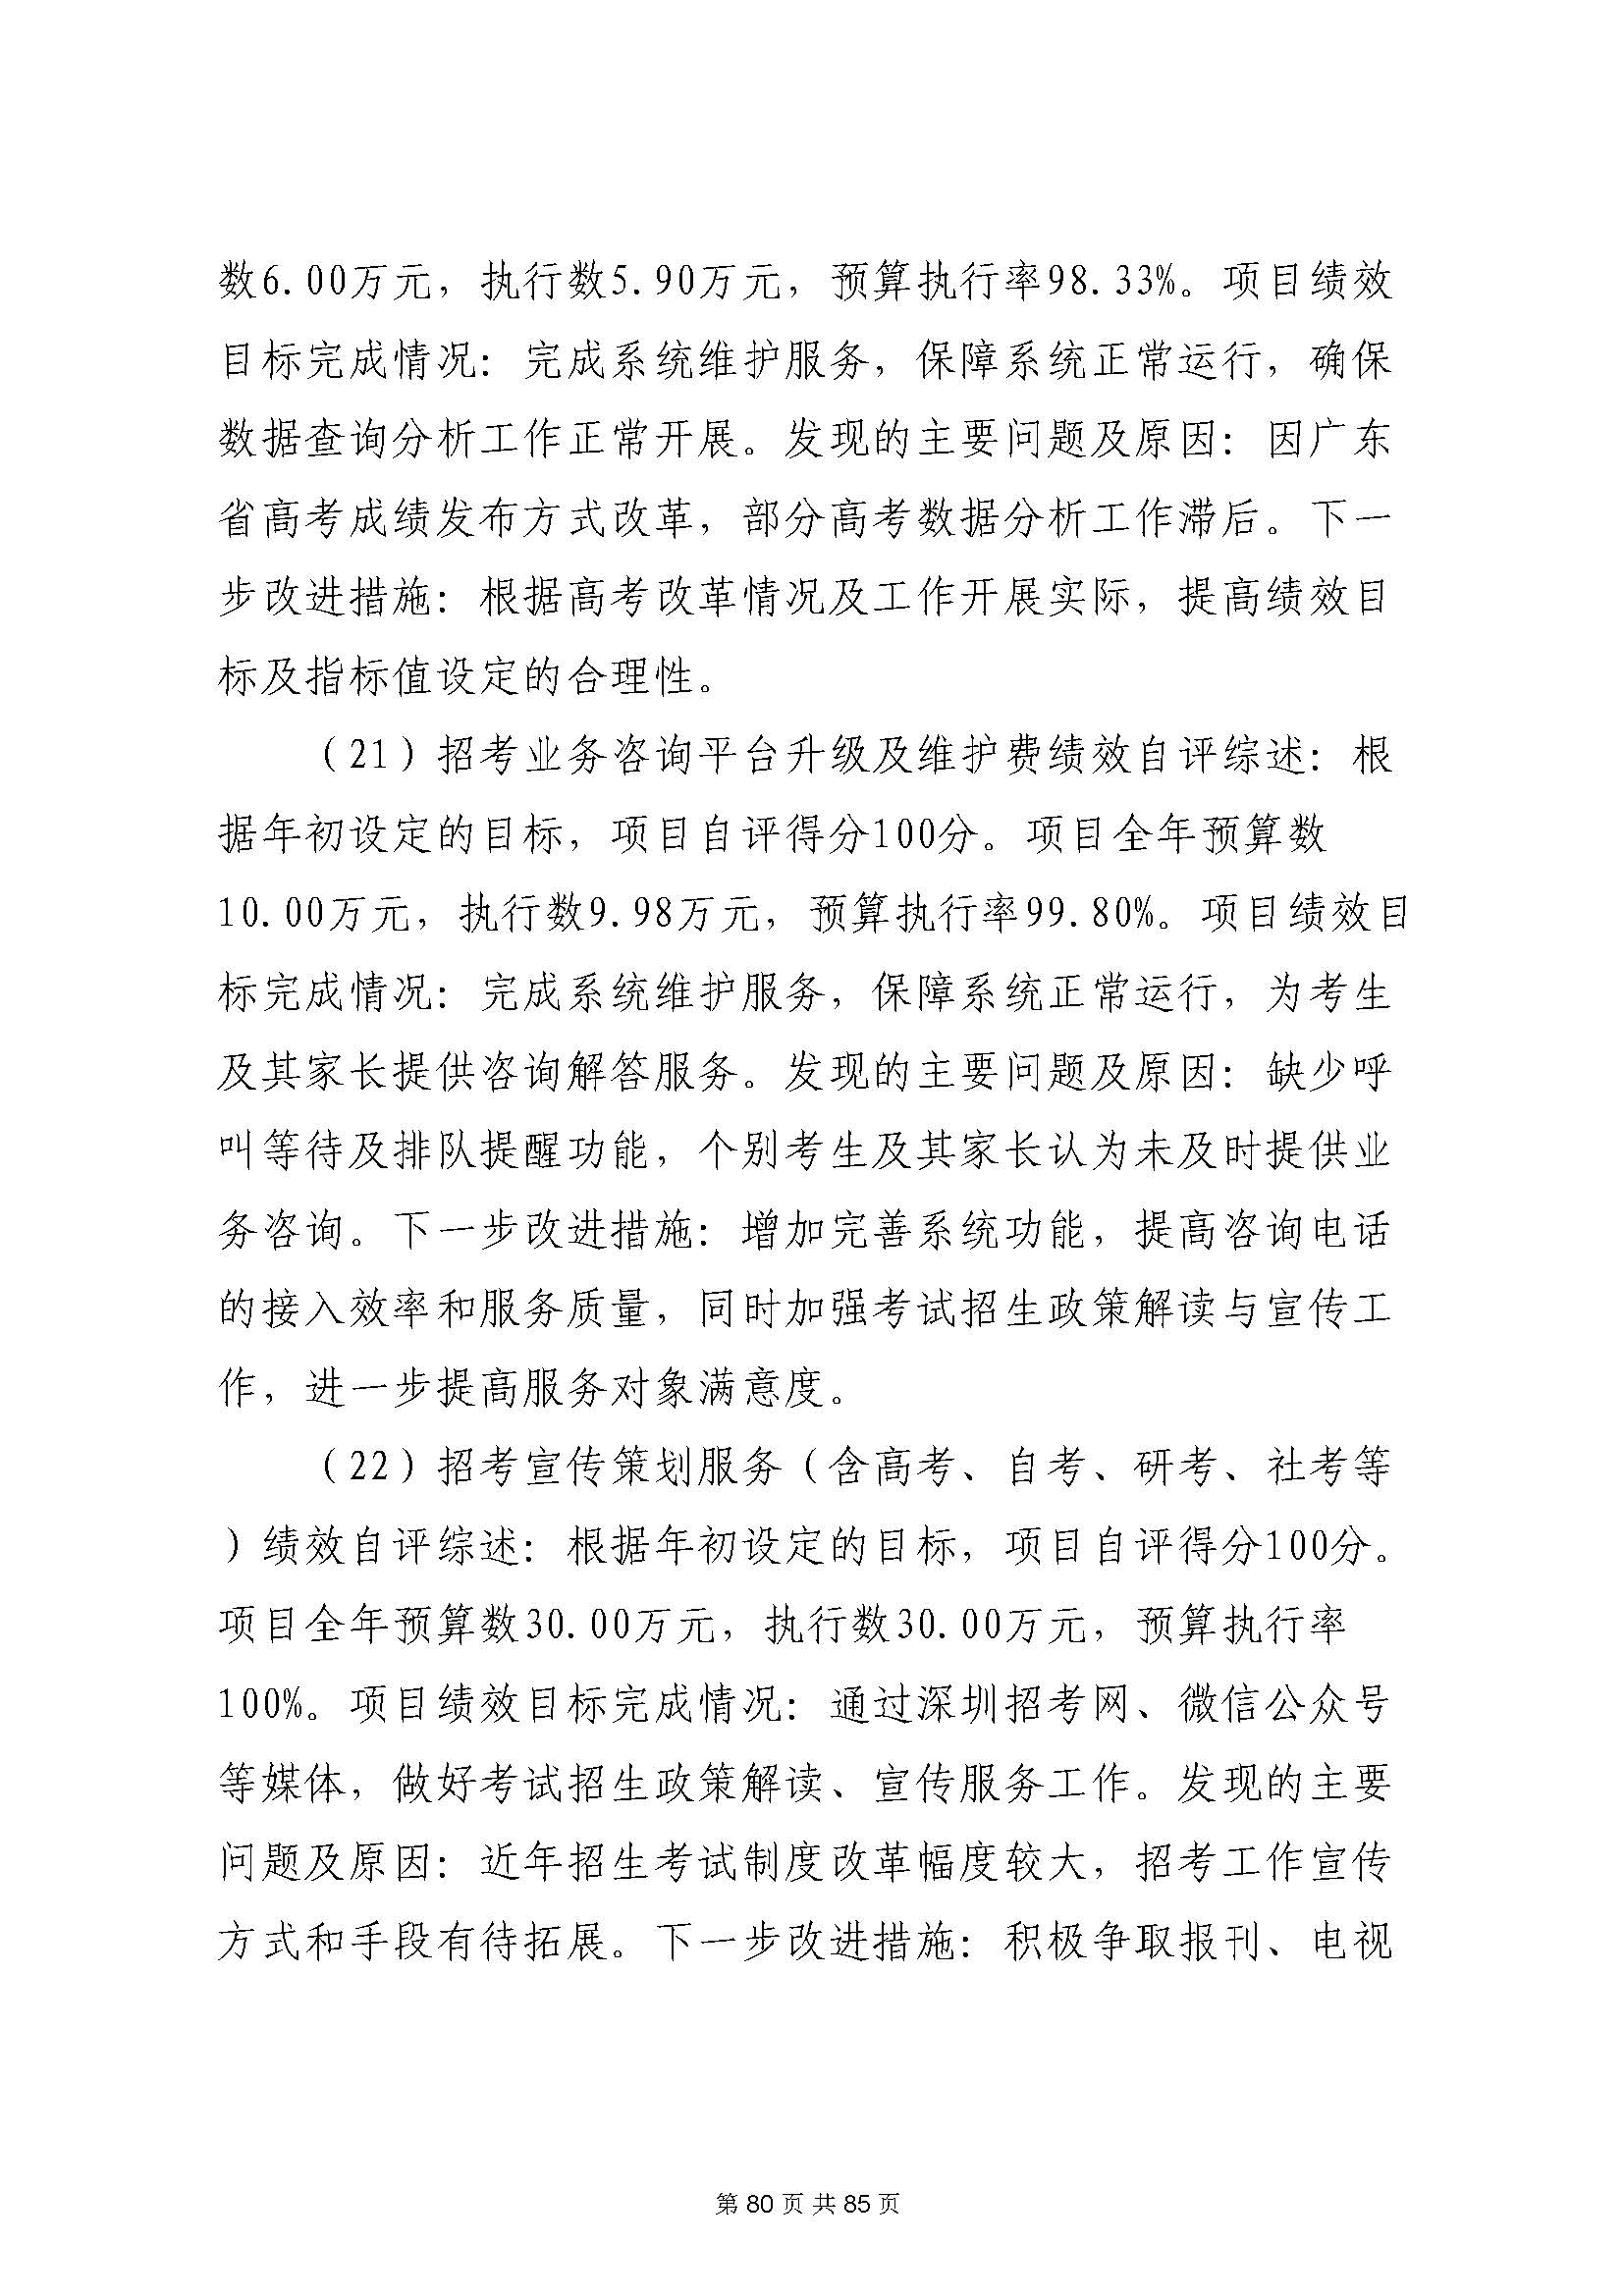 深圳市招生考试办公室2020年度部门决算_页面_81.jpg